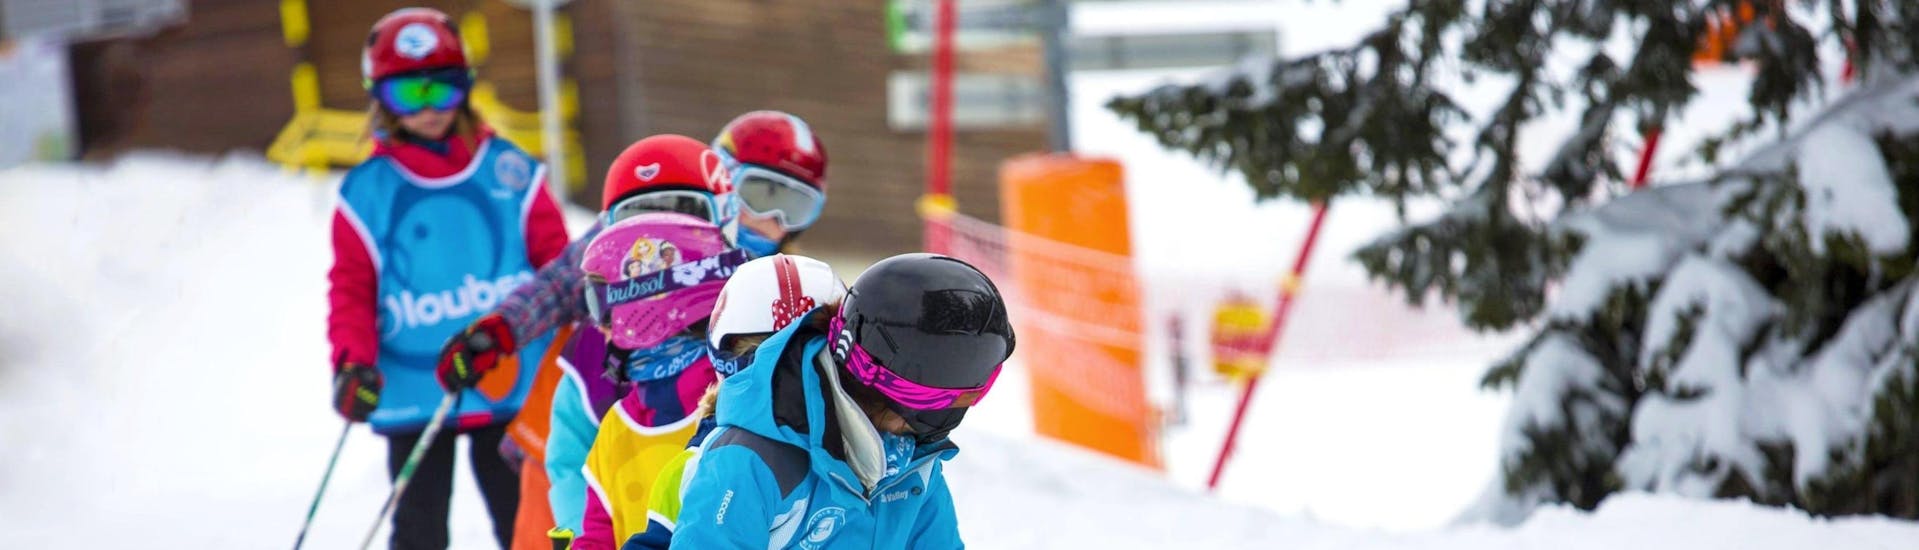 Clases de esquí para niños (6-13 años).